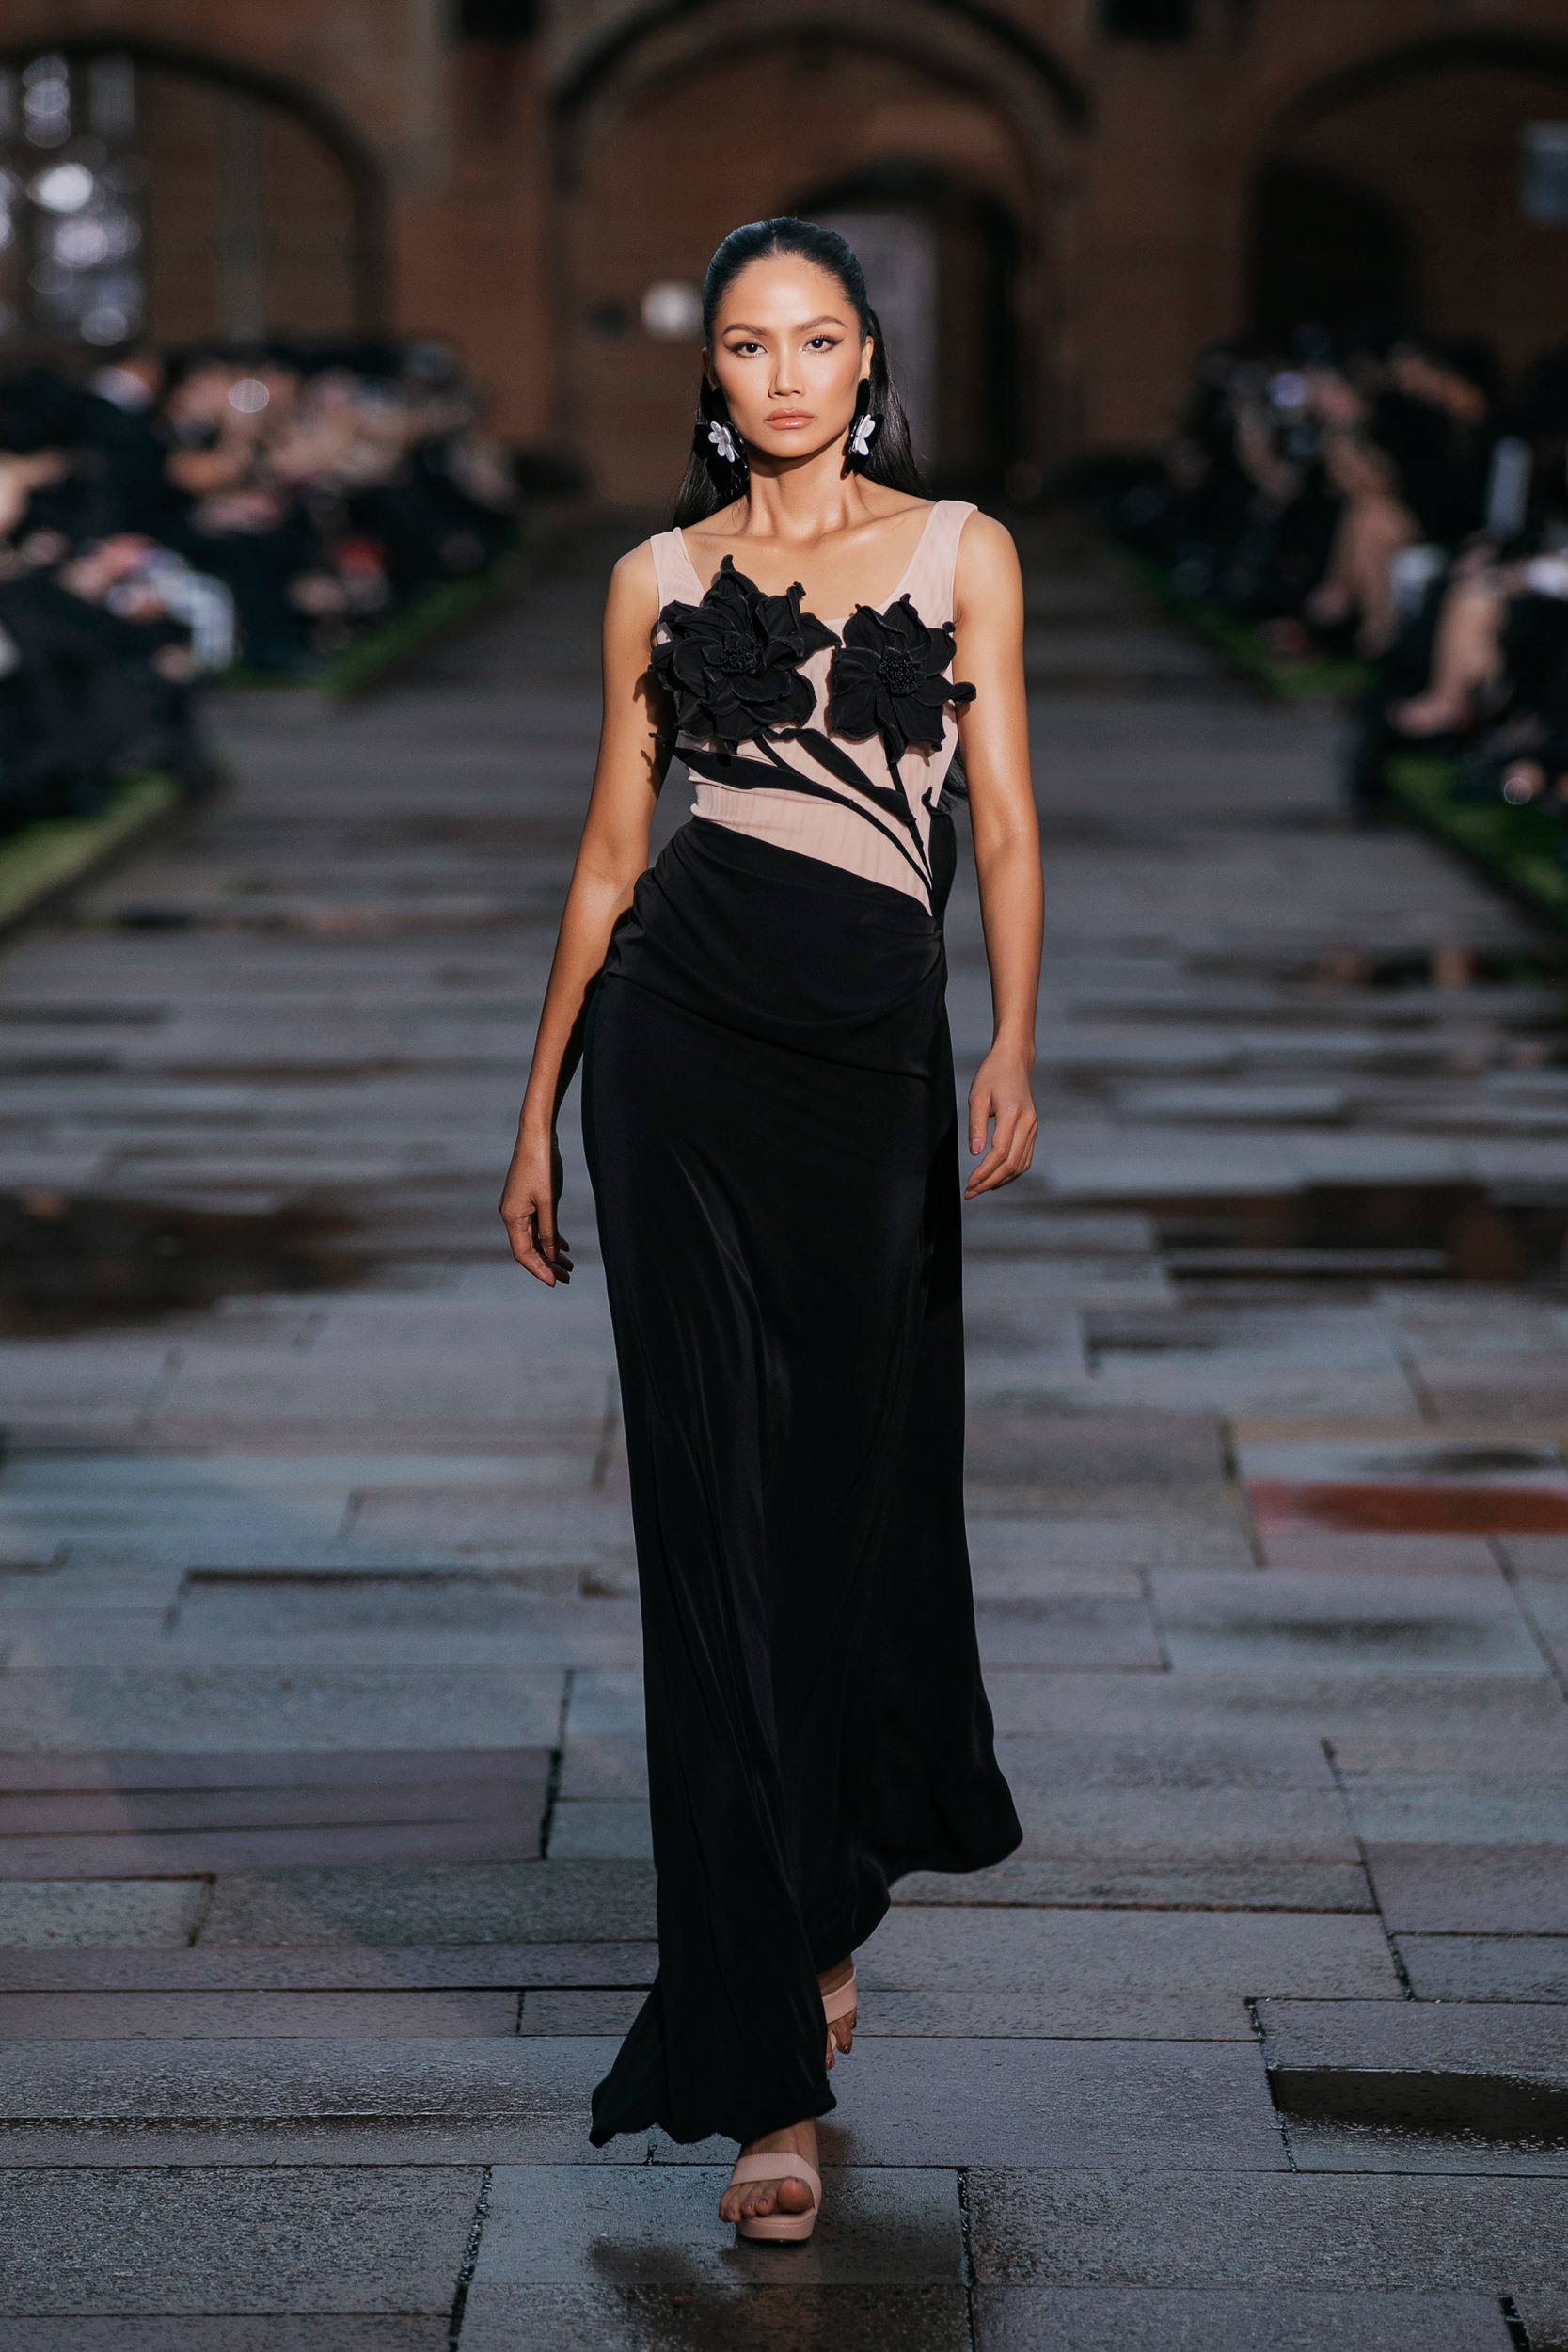 Hoa hậu H’Hen Niê mở màn với thiết kế màu đen, phom ôm sát cơ thể với điểm nhấn là hoạ tiết hoa 3D. Ảnh: Kiếng Cận